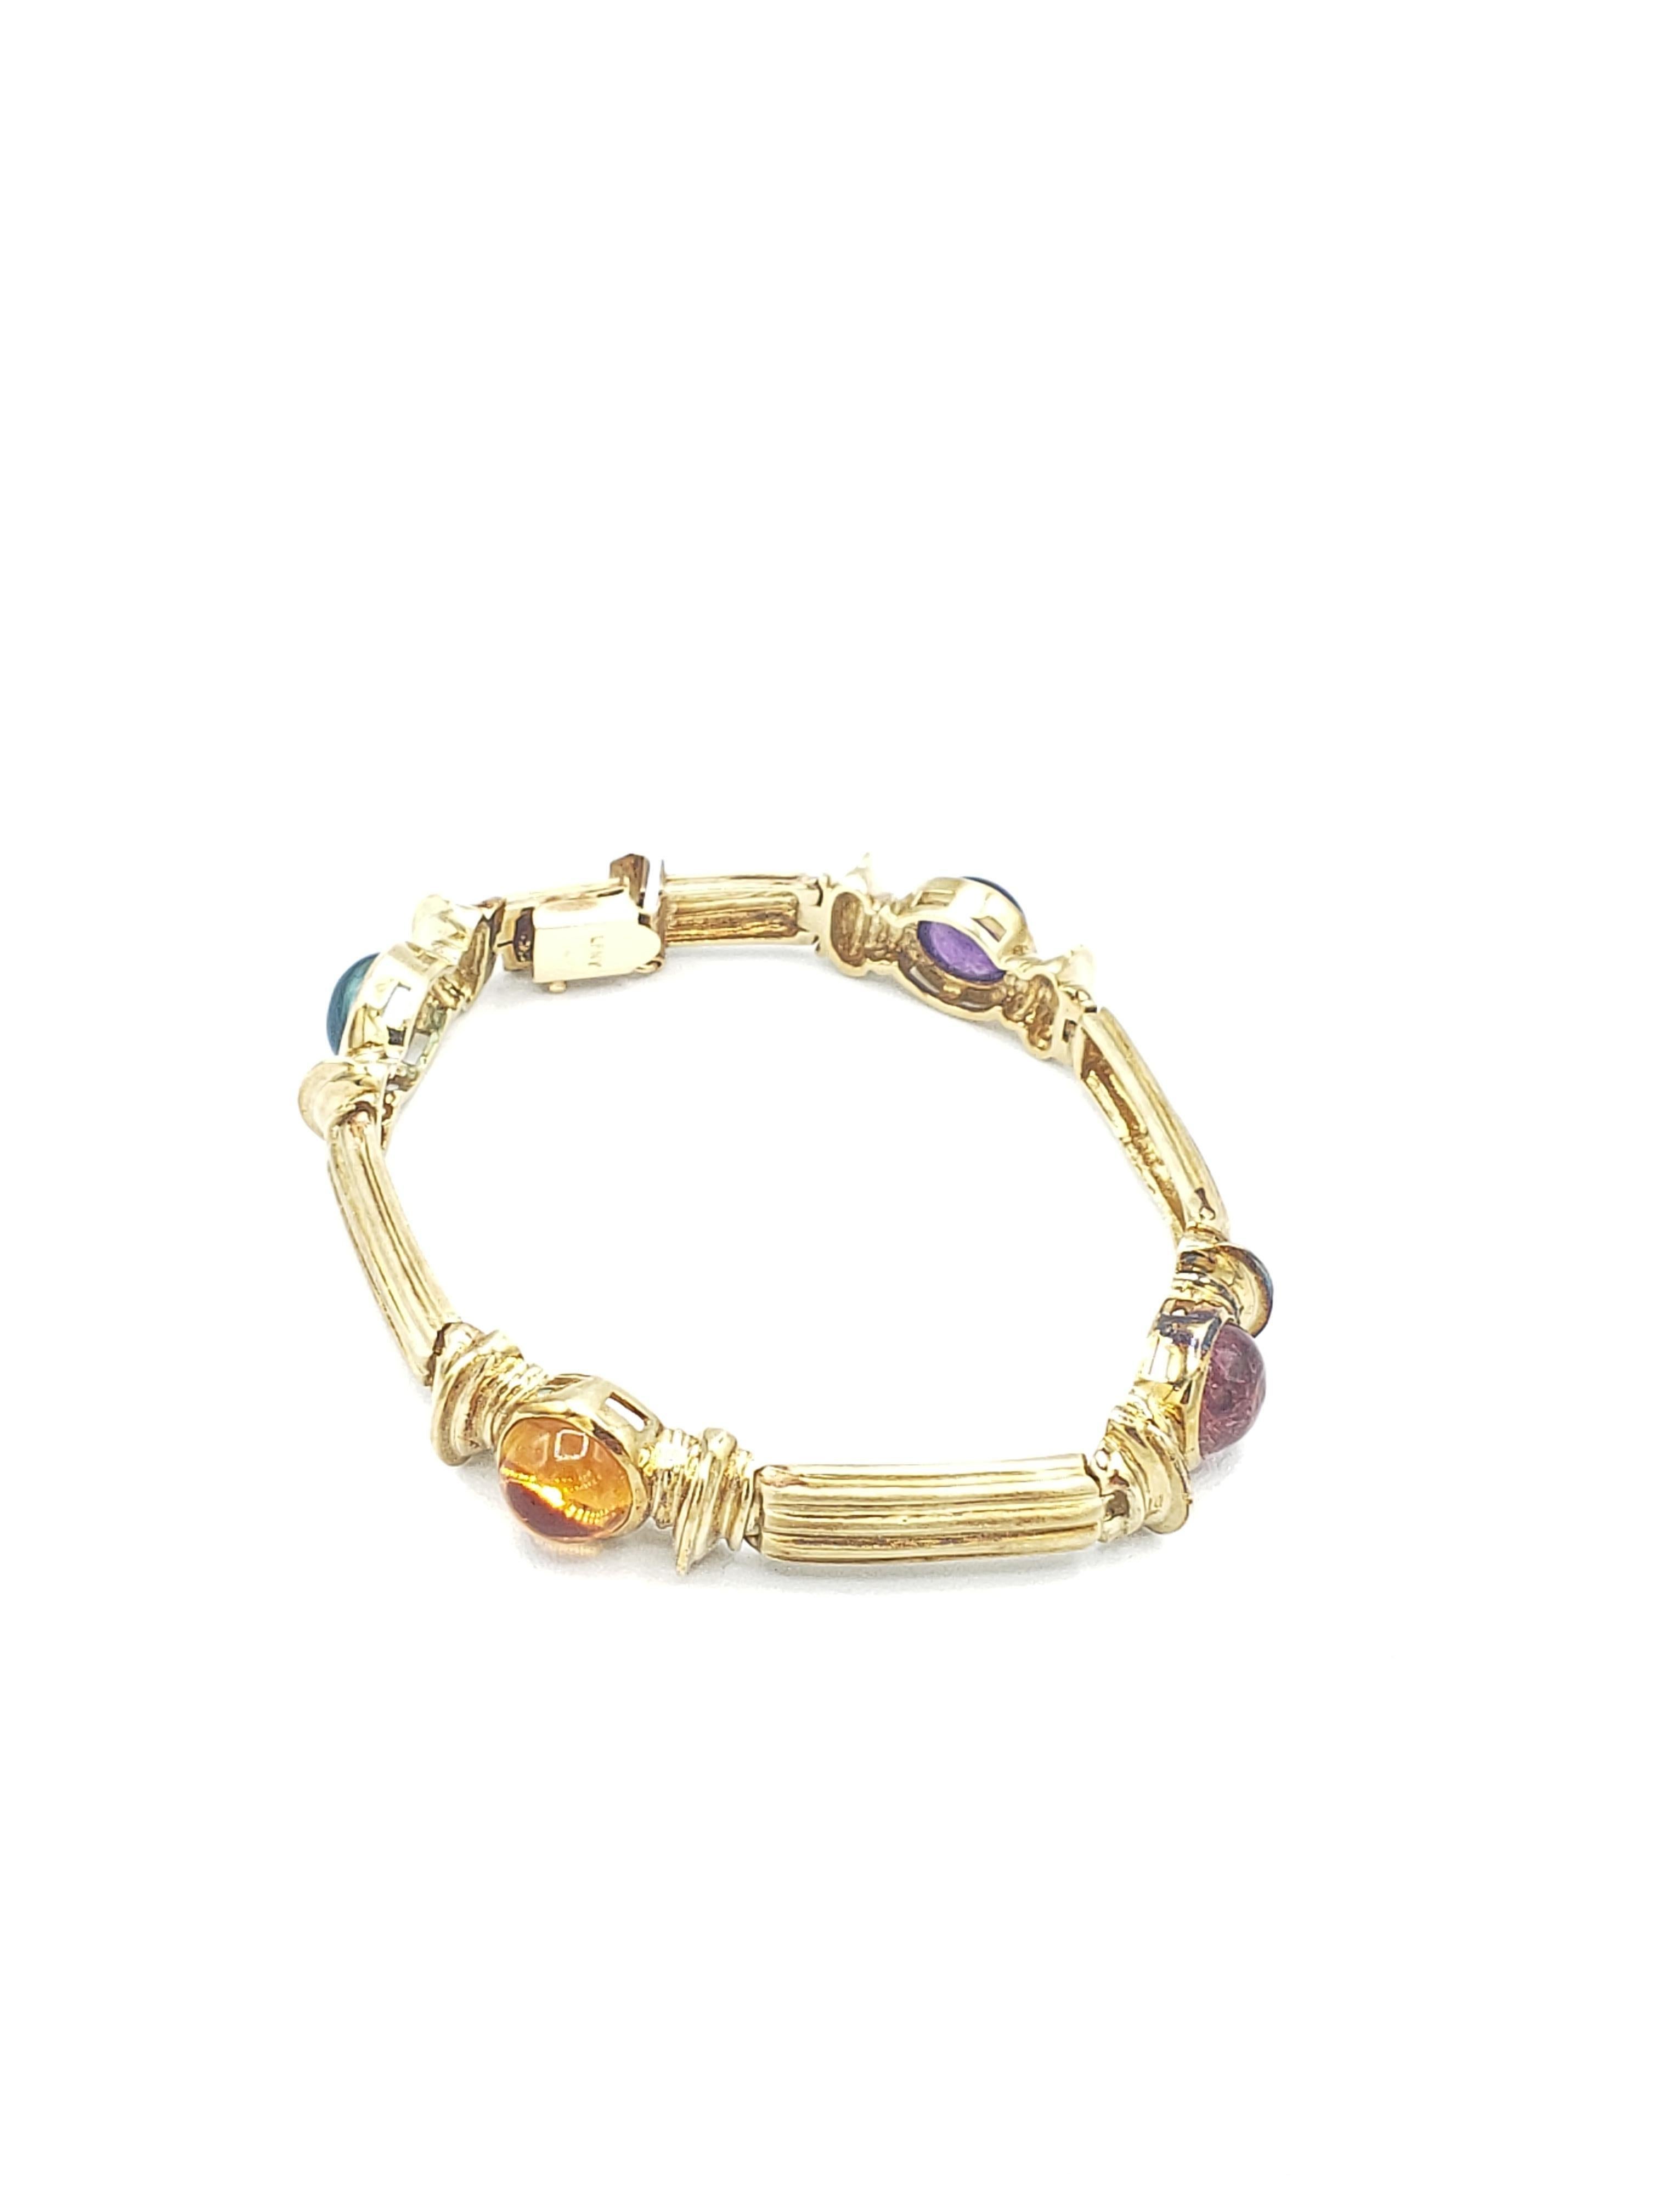 Dieses wunderschöne Armband ist eine wunderbare Ergänzung für jede Schmucksammlung. Er ist aus massivem 14-karätigem Gelbgold gefertigt und mit wunderschönen blauen und rosafarbenen Turmalin-, Amethyst- und Citrin-Edelsteinen besetzt. Der von der